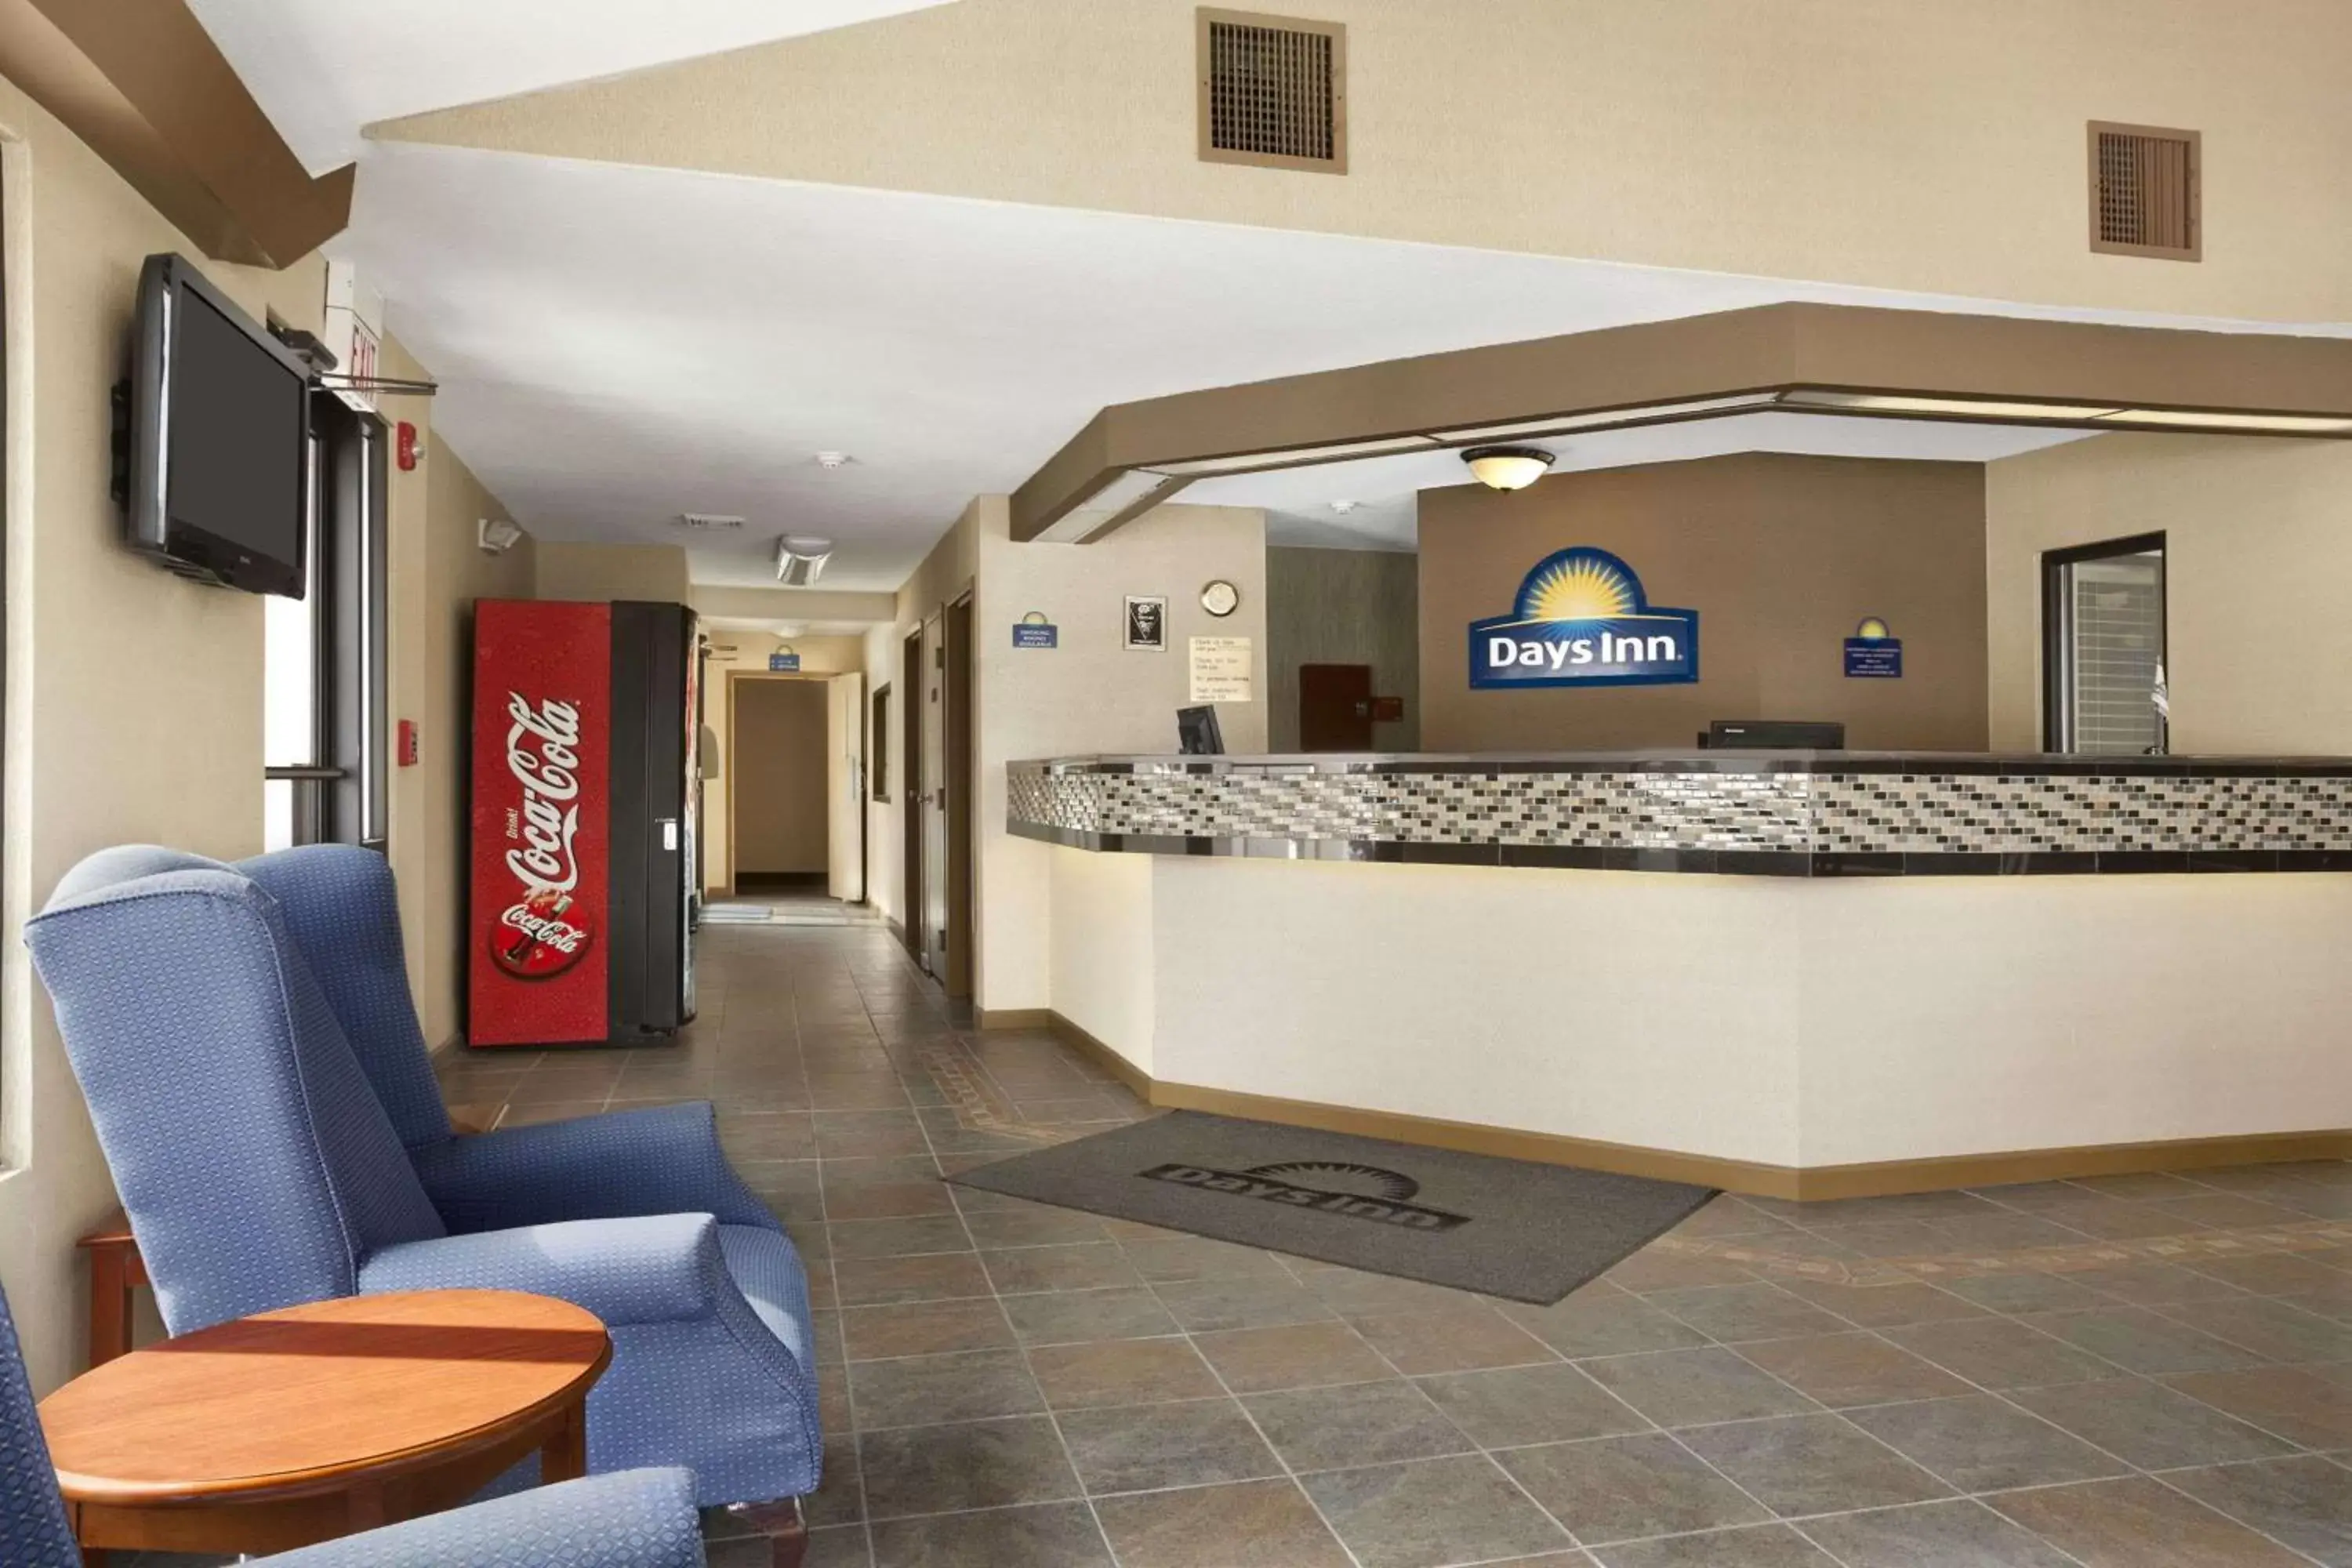 Lobby or reception, Lobby/Reception in Days Inn by Wyndham Middletown